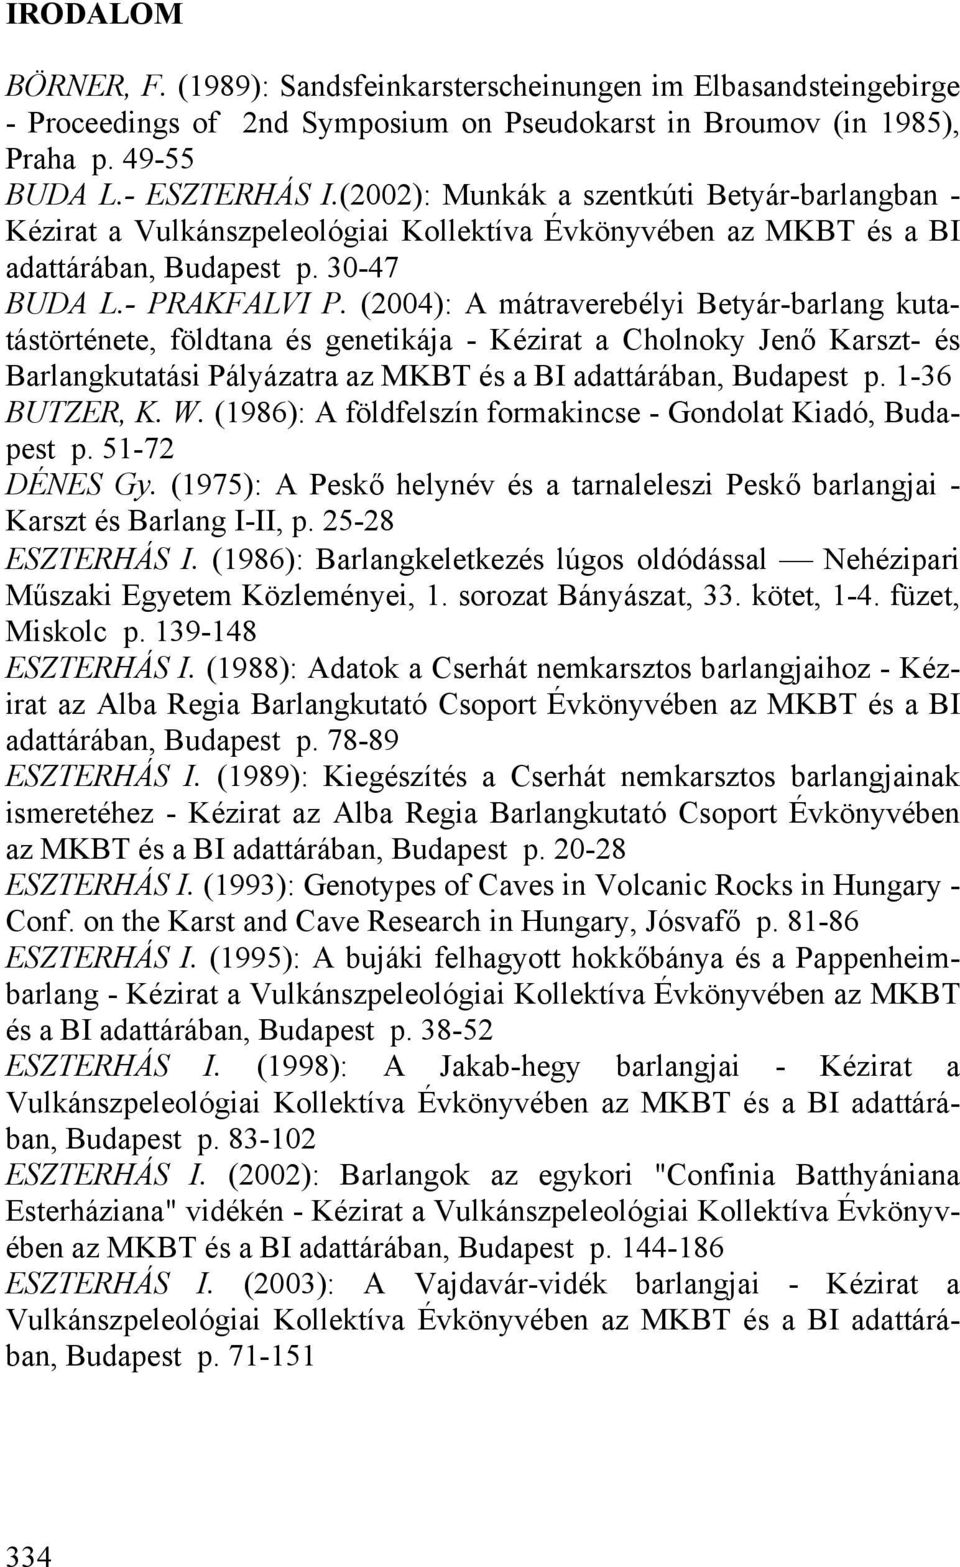 (2004): A mátraverebélyi Betyár-barlang kutatástörténete, földtana és genetikája - Kézirat a Cholnoky Jenő Karszt- és Barlangkutatási Pályázatra az MKBT és a BI adattárában, Budapest p.